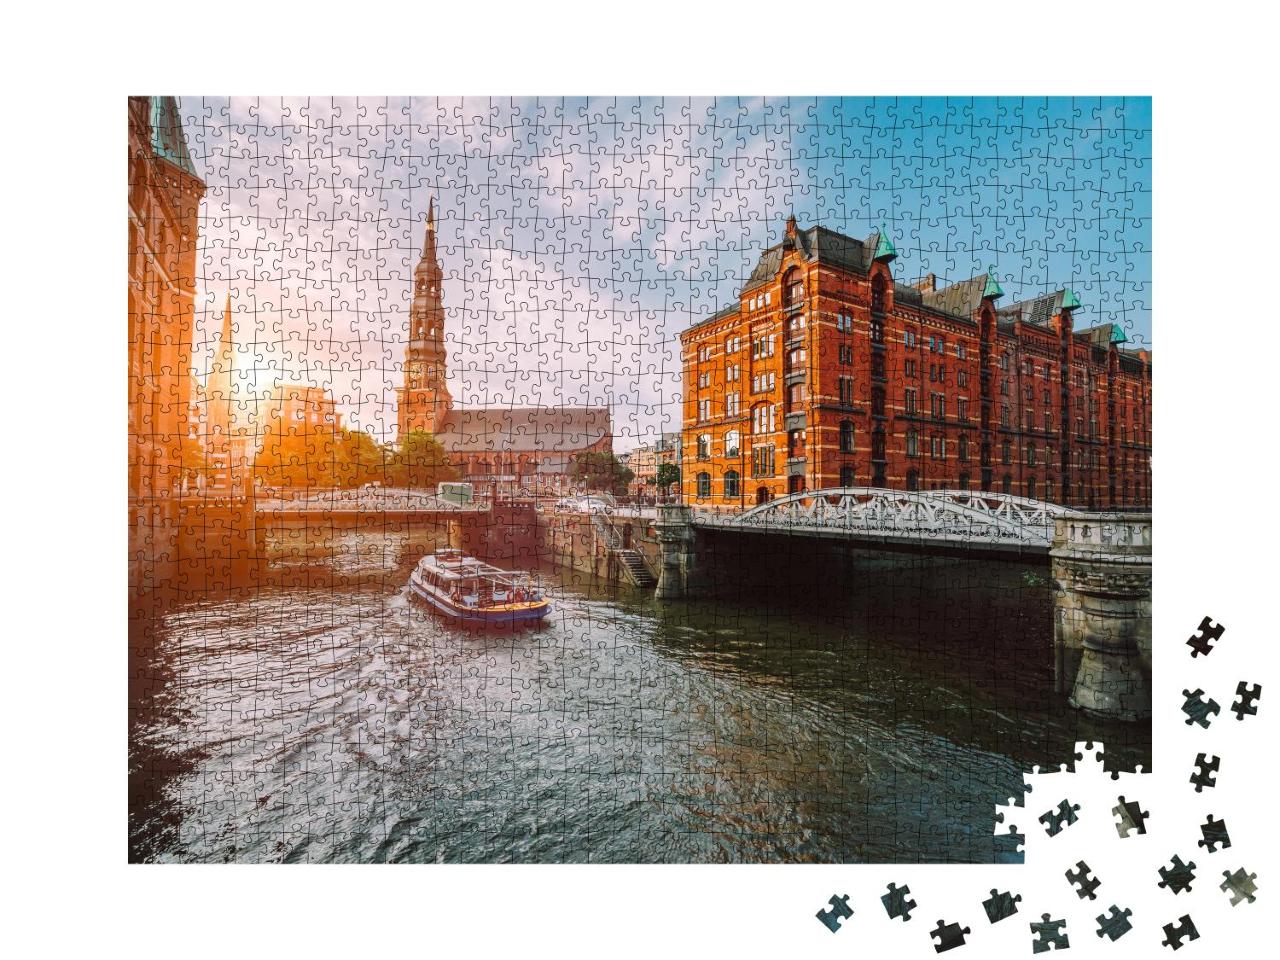 Puzzle 1000 Teile „Speicherstadt Hamburg im goldenen Sonnenuntergang“